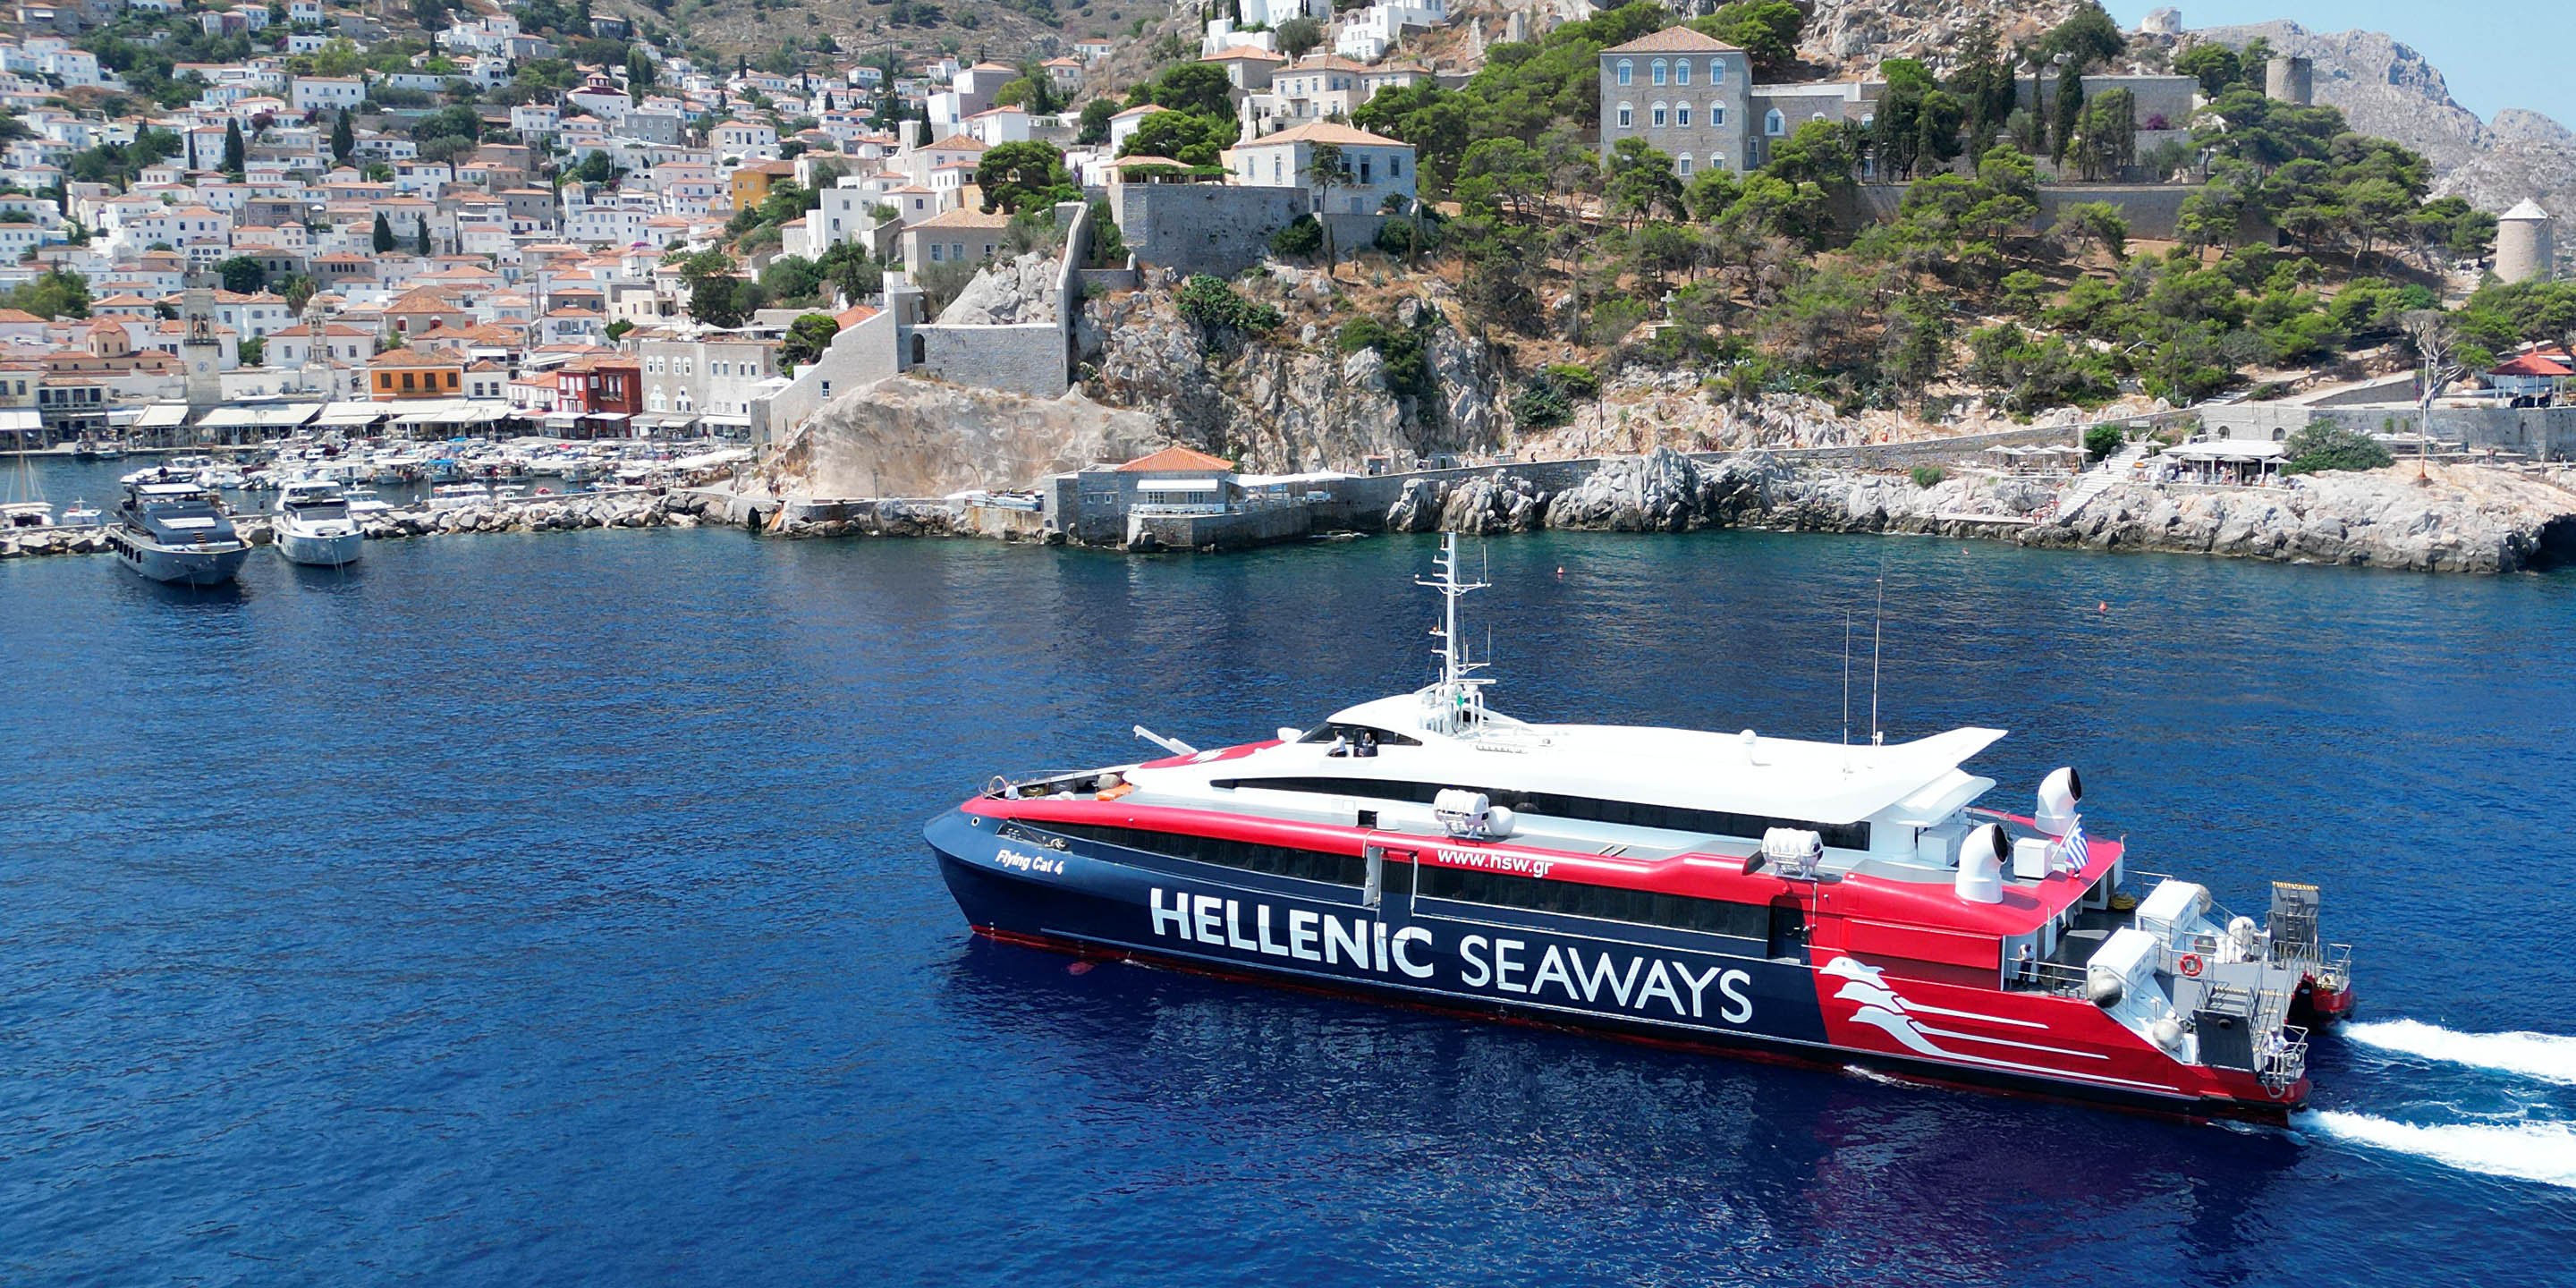 Το ταχύπλοο Flying Cat 4 της Hellenic Seaways φτάνει στο λιμάνι της Ύδρας από Αθήνα Πειραιά